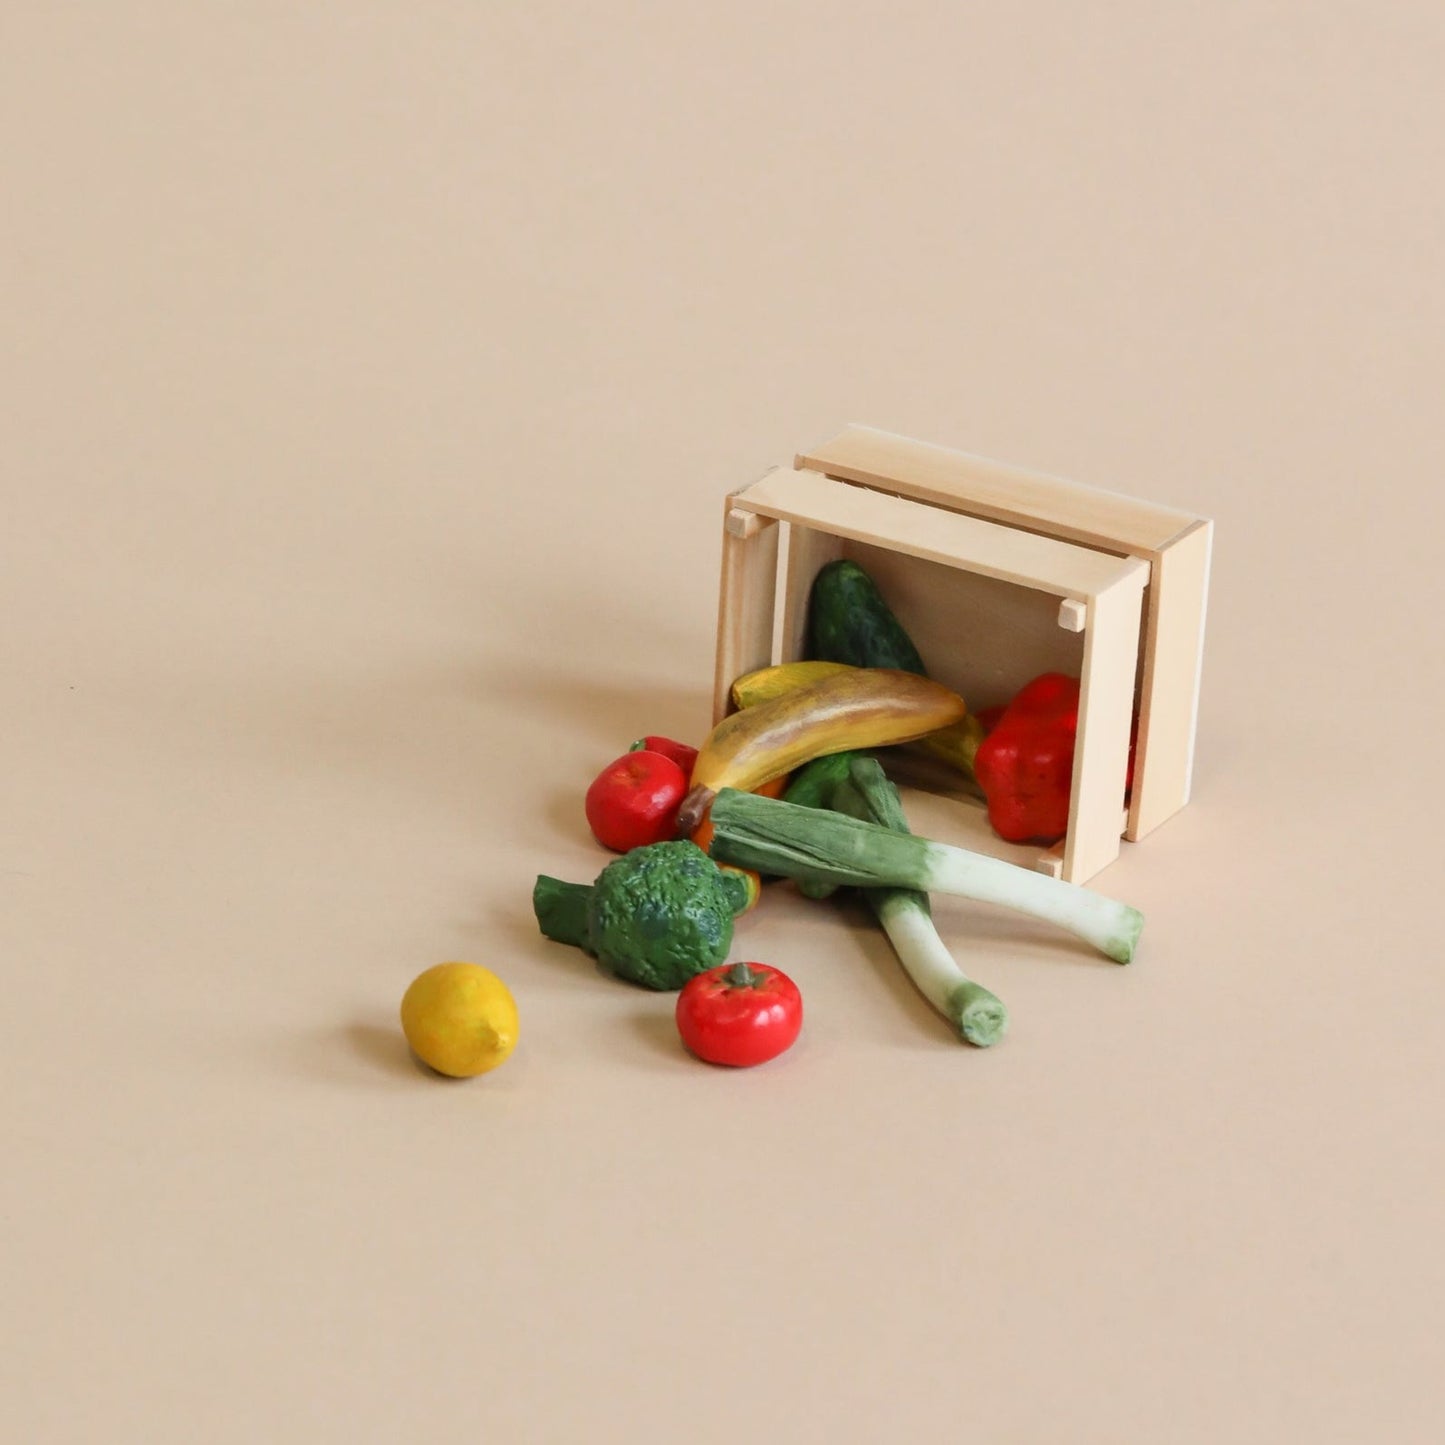 Frutas y verduras miniature